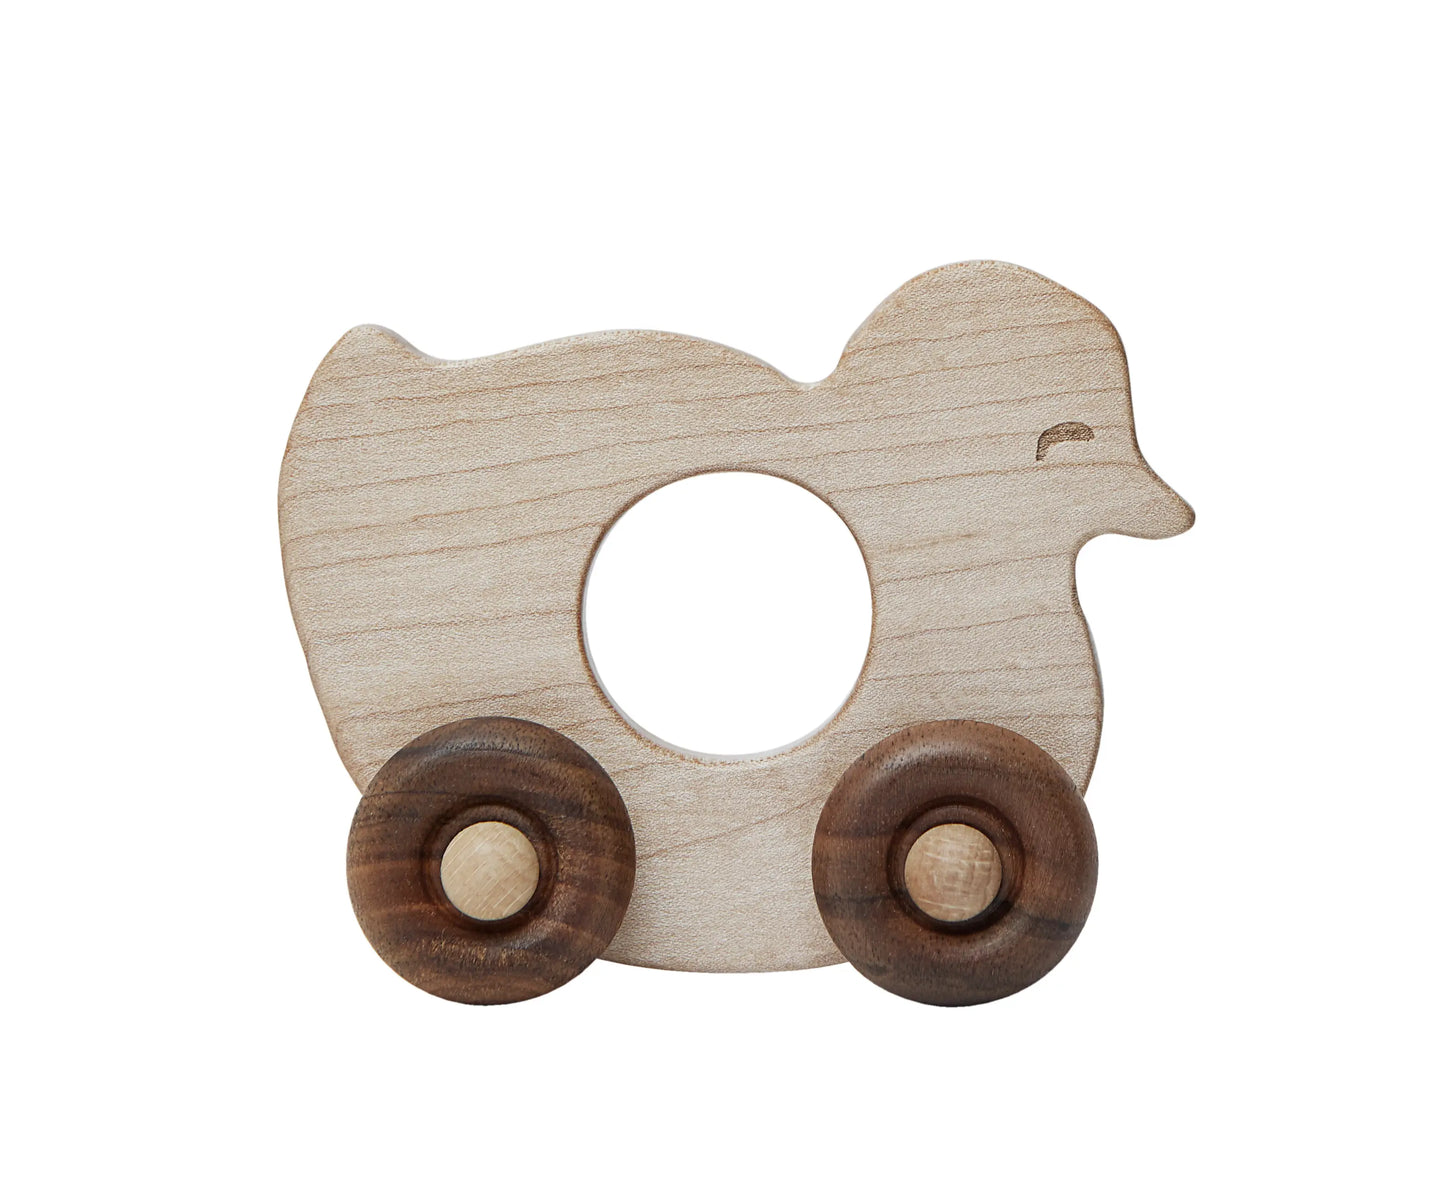 Houten wielspeelgoed in de vorm van een eend, dat makkelijk in de hand van een baby past.